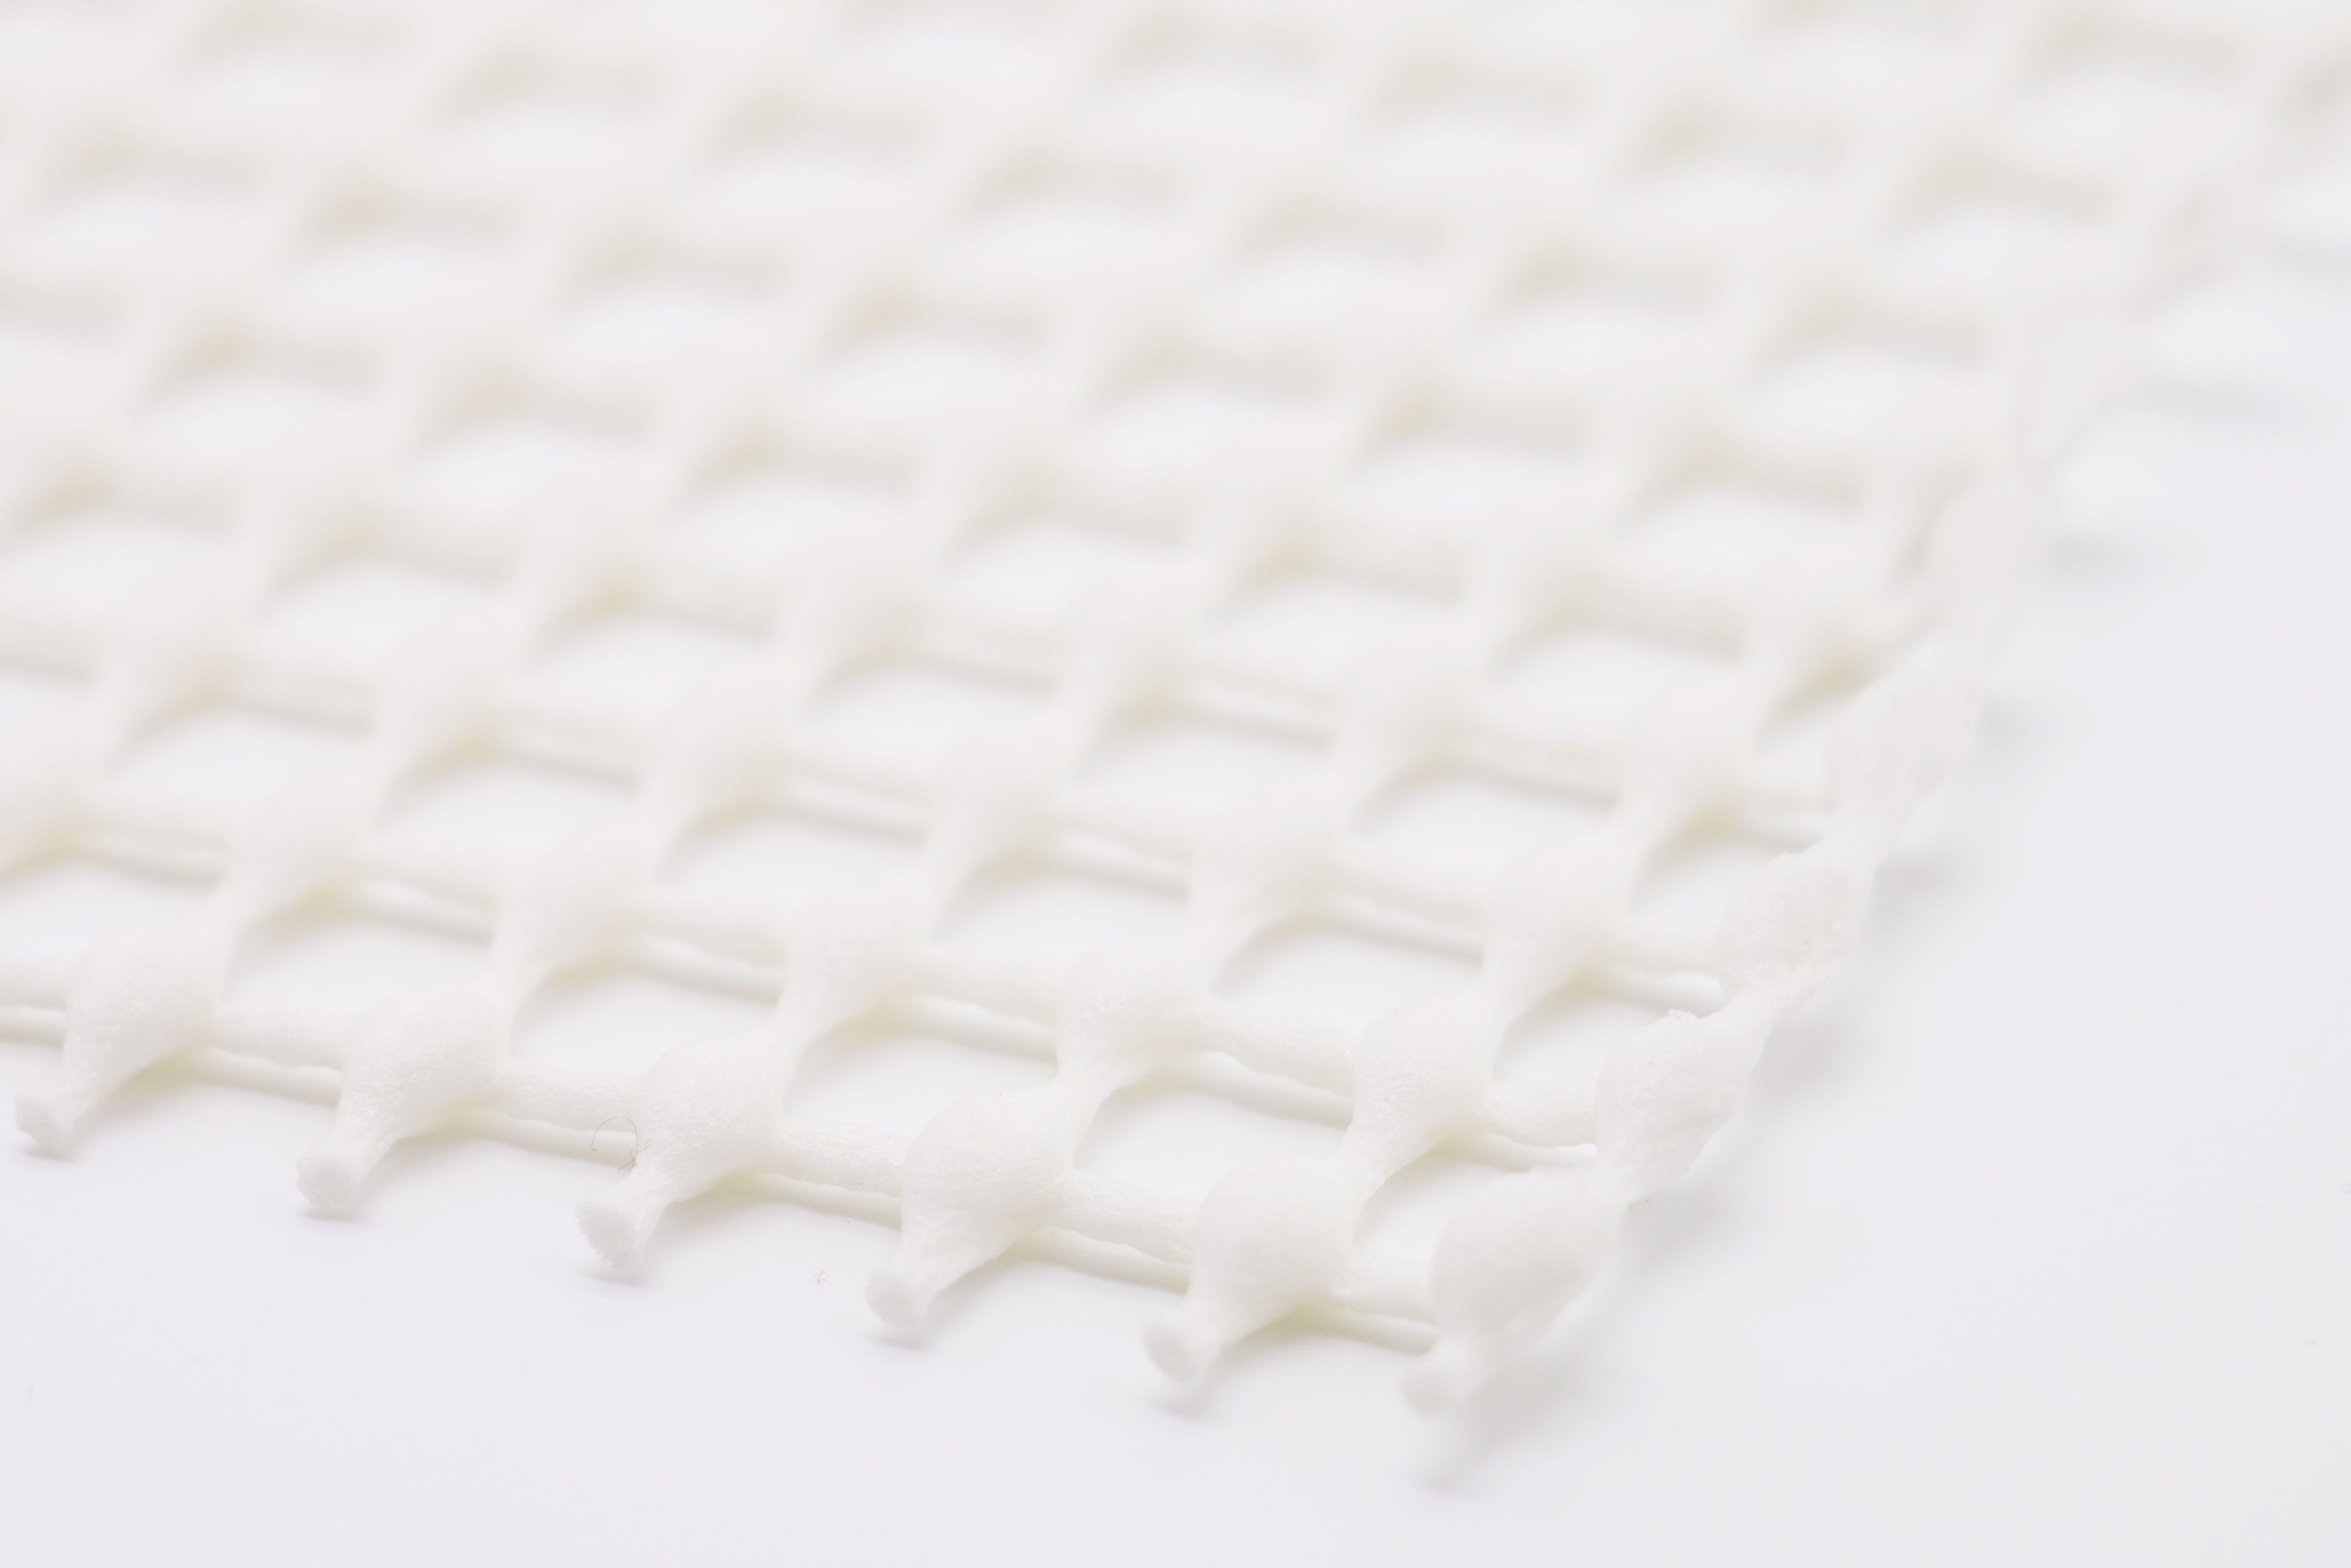 Antirutsch Teppichunterlage, ZOLLNER, individuell zuschneidbar, 120 cm, x 60 100% (PVC) Polyvinylchlorid